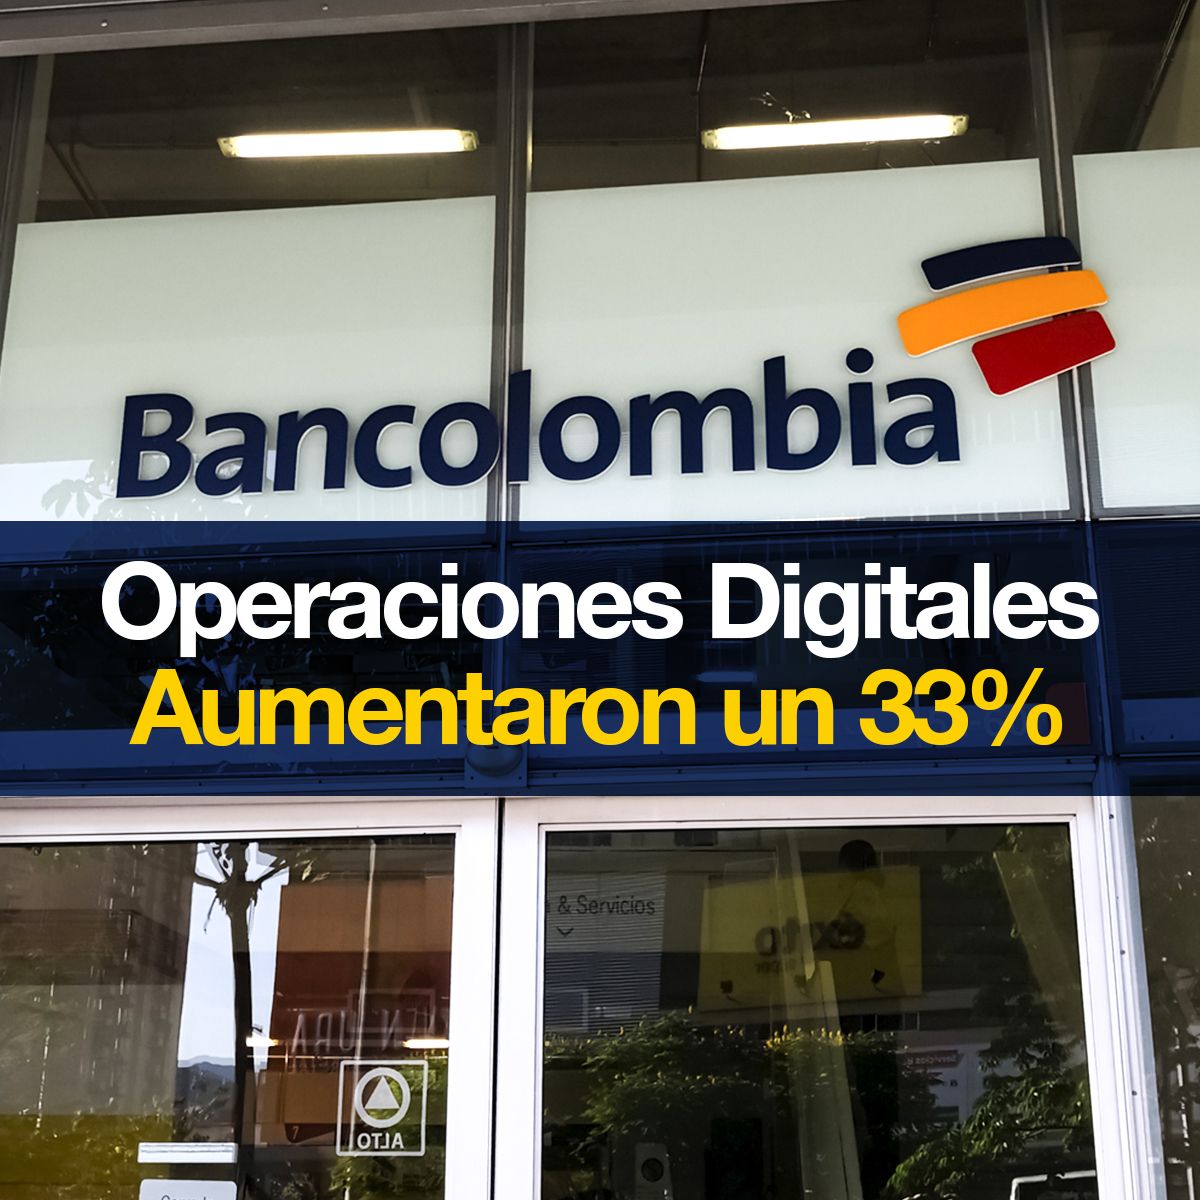 Bancolombia: Operaciones Digitales Aumentaron un 33%